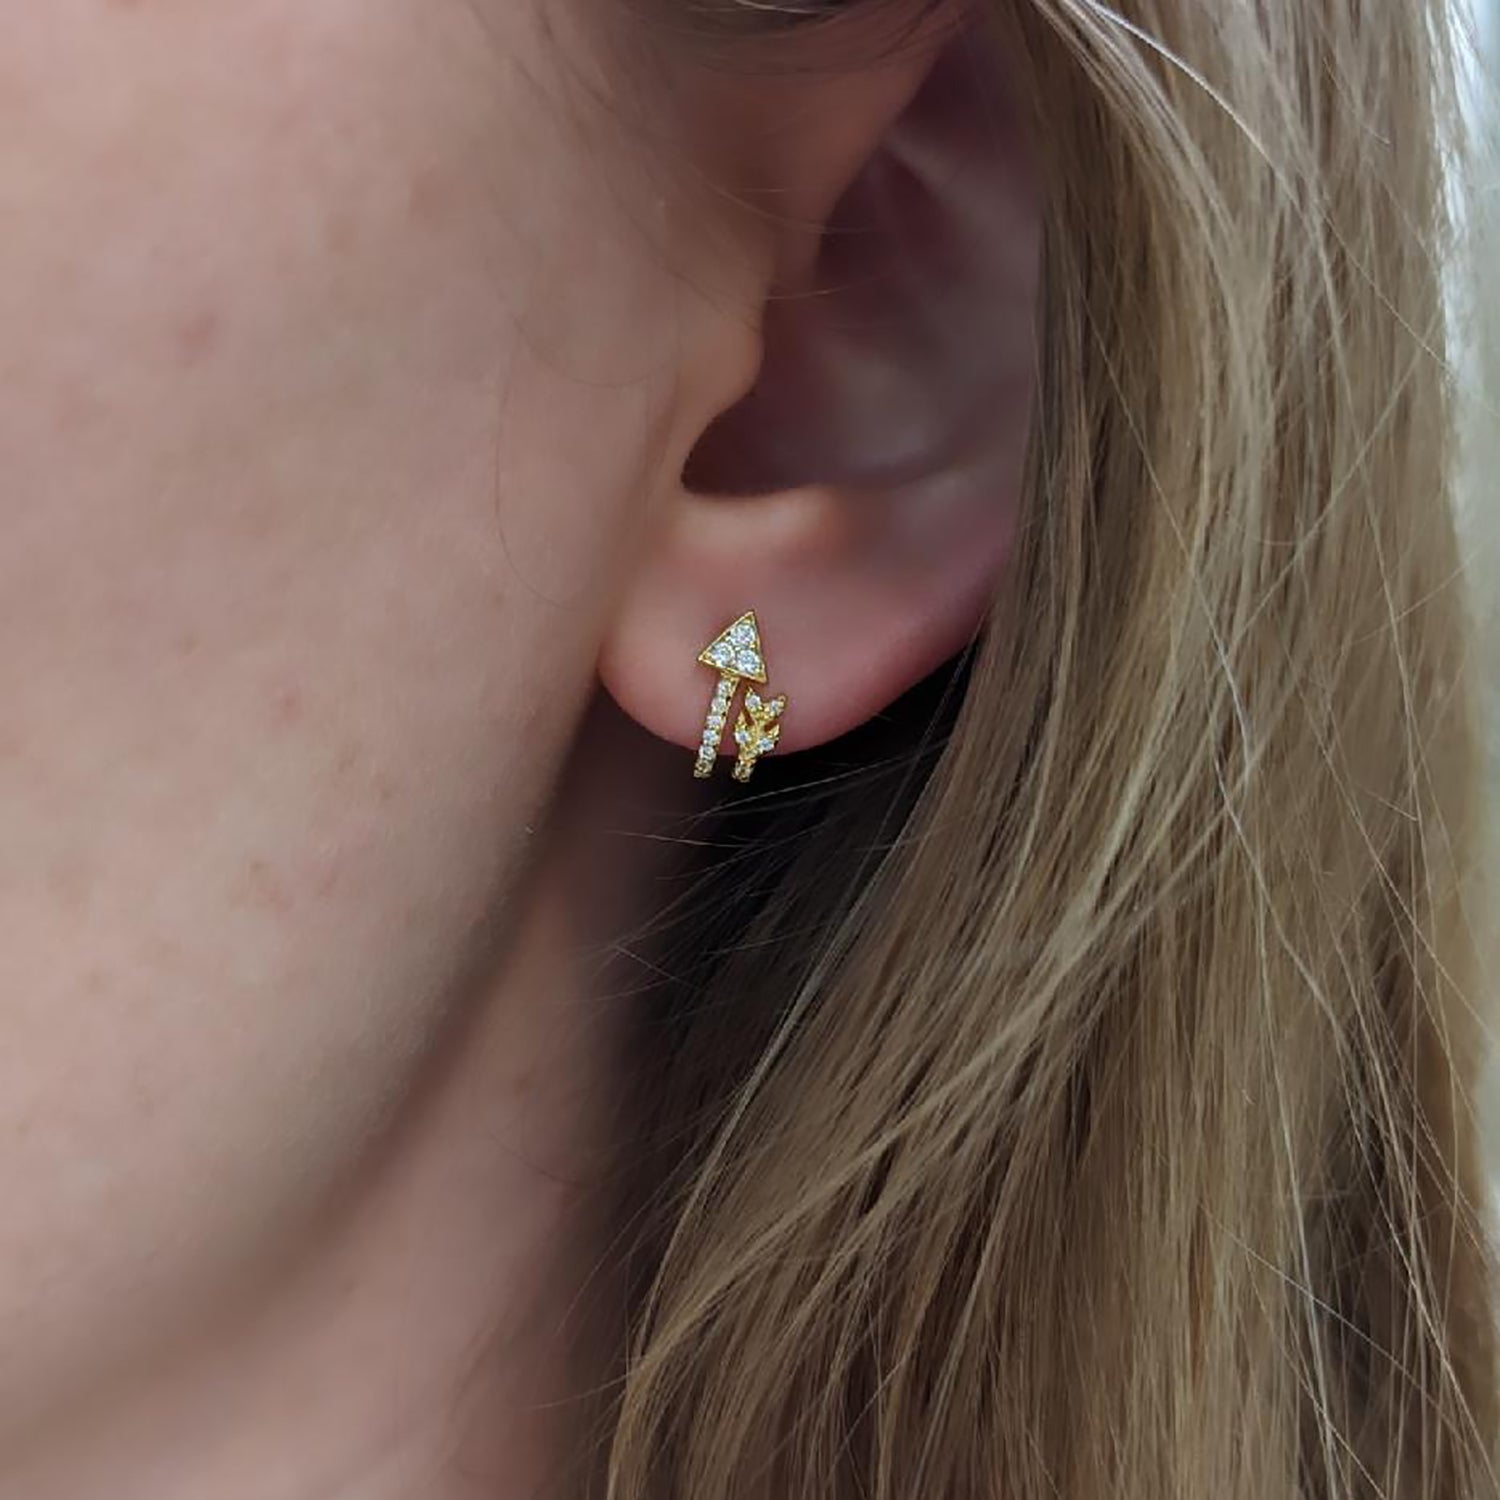 Pair Ear Cartilage Stud Arrow Earrings Cool trend Jewelry man woman  accessories | eBay